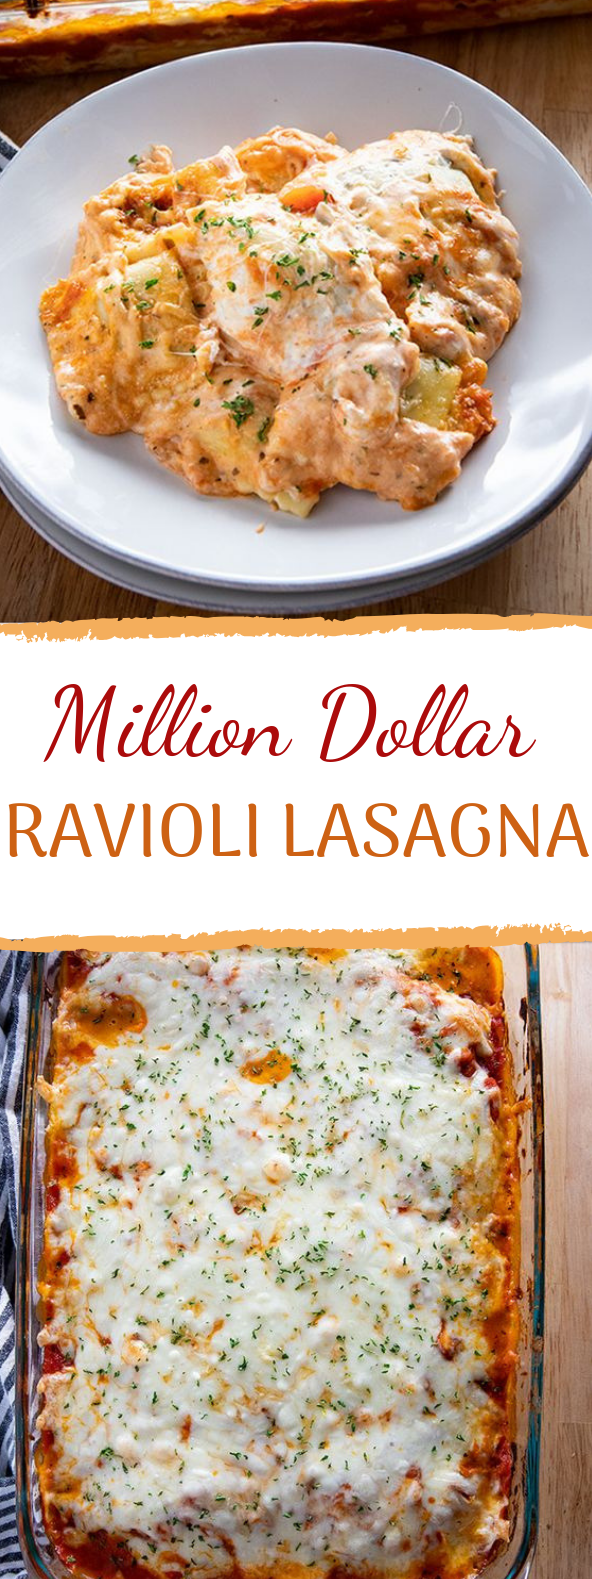 Million Dollar Ravioli Lasagna #dinner #familyrecipes